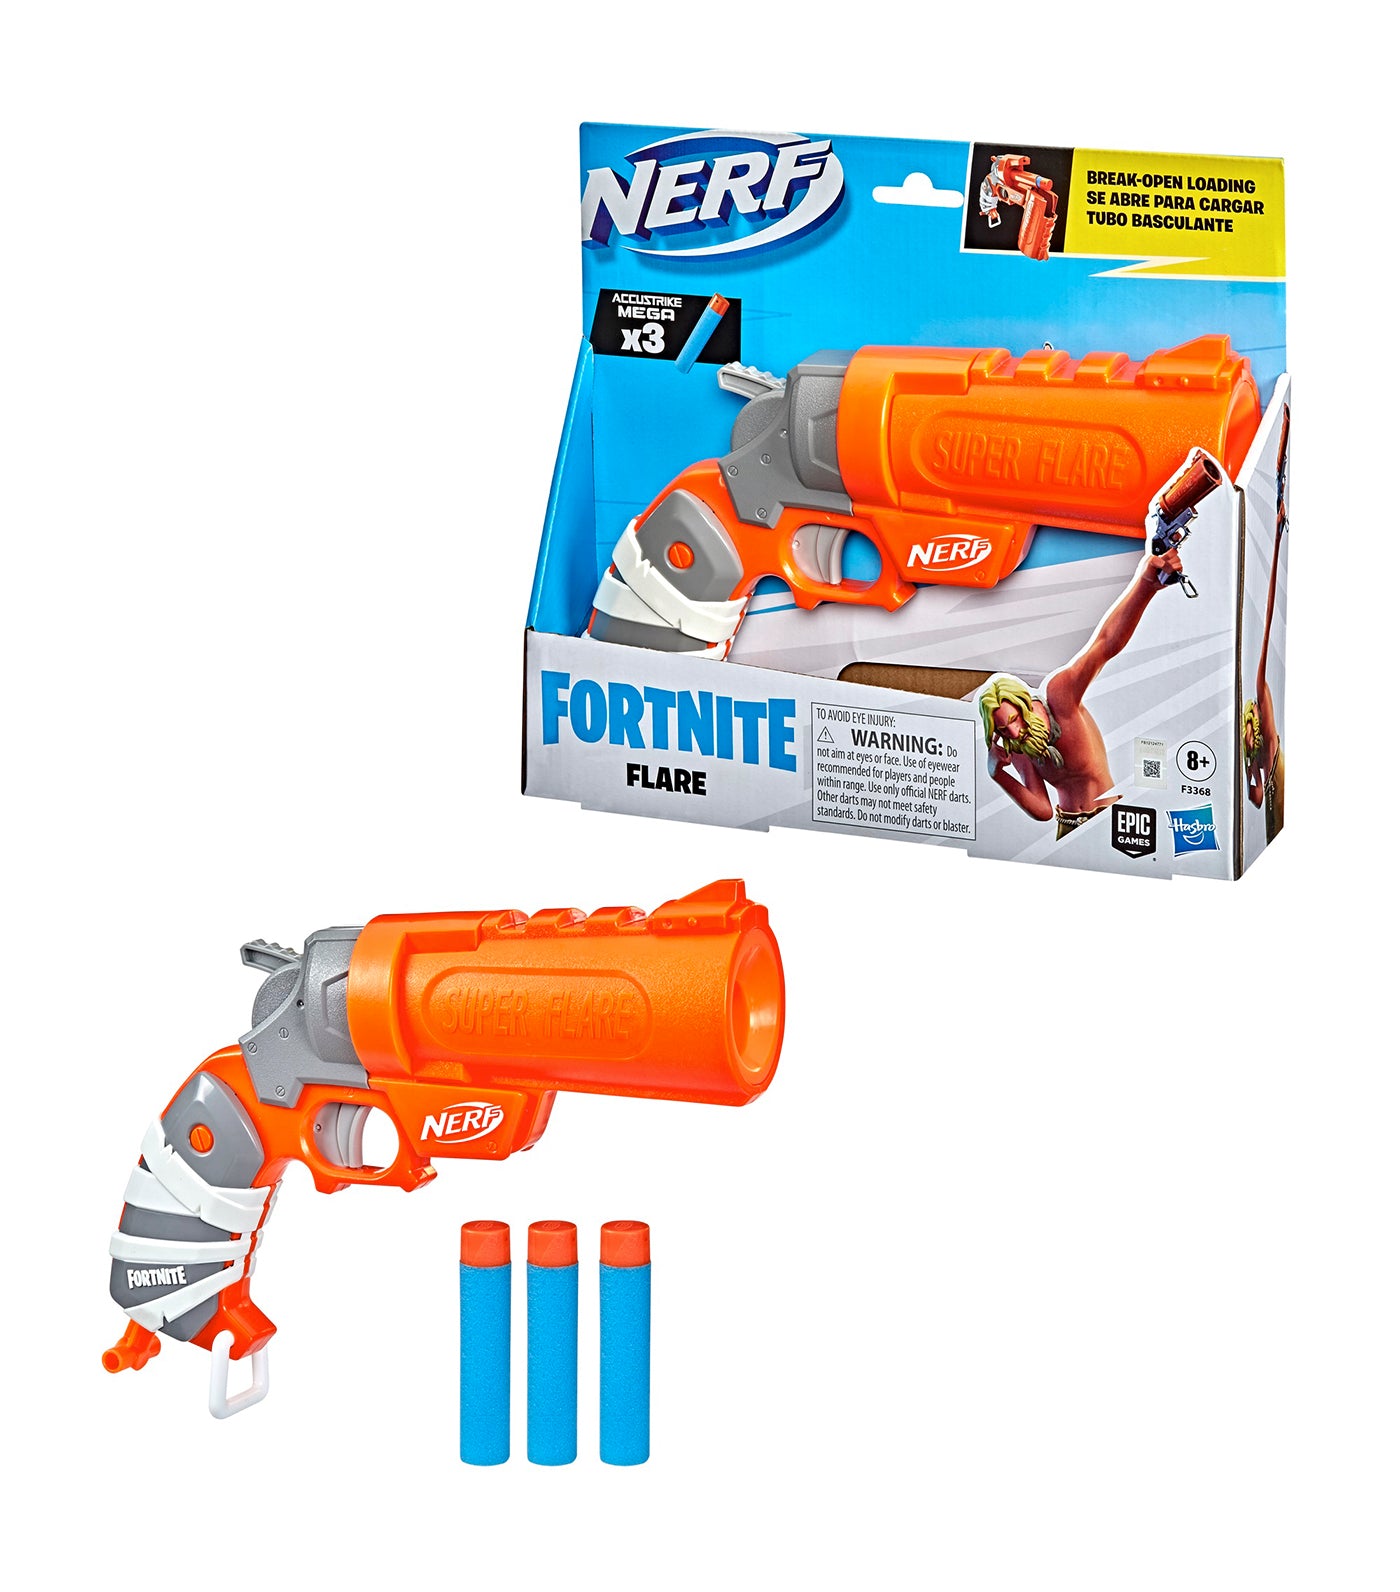 Nerf Fortnite Flare Blaster